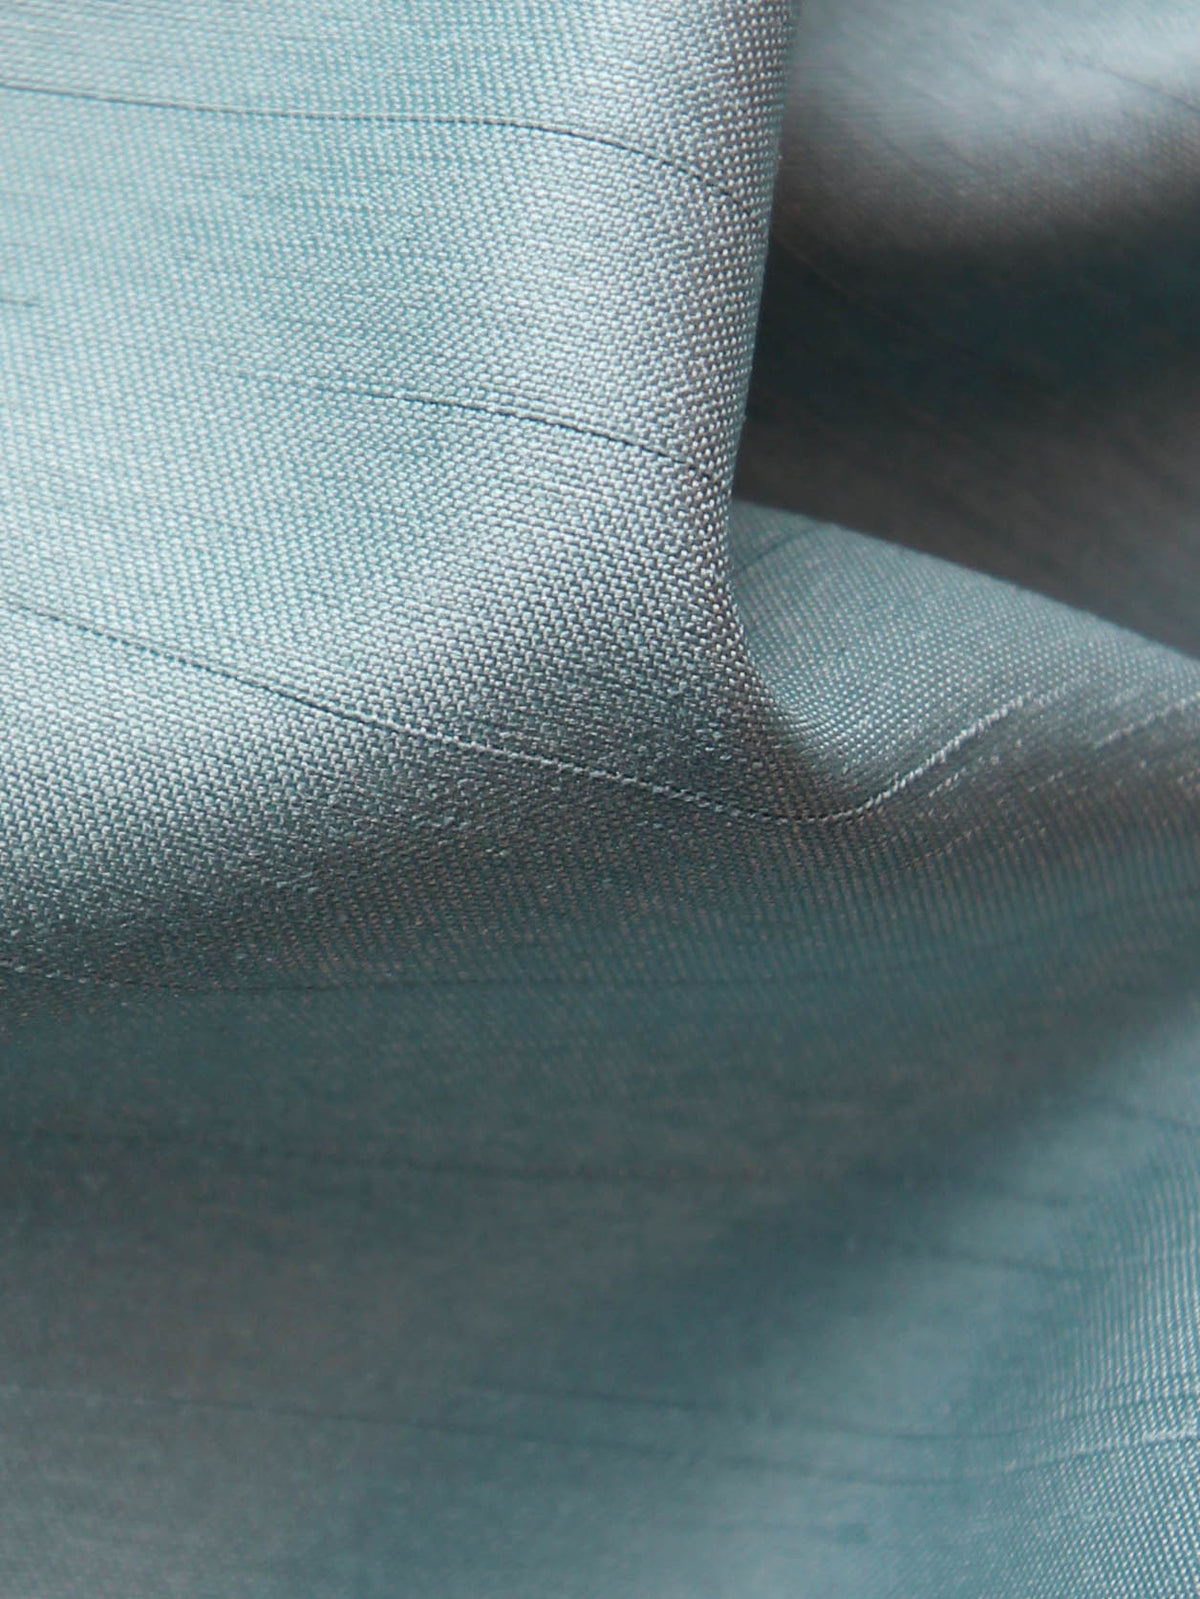 Entenei-Dupion mit Polyester-Satin-Rückseite – Klarheit